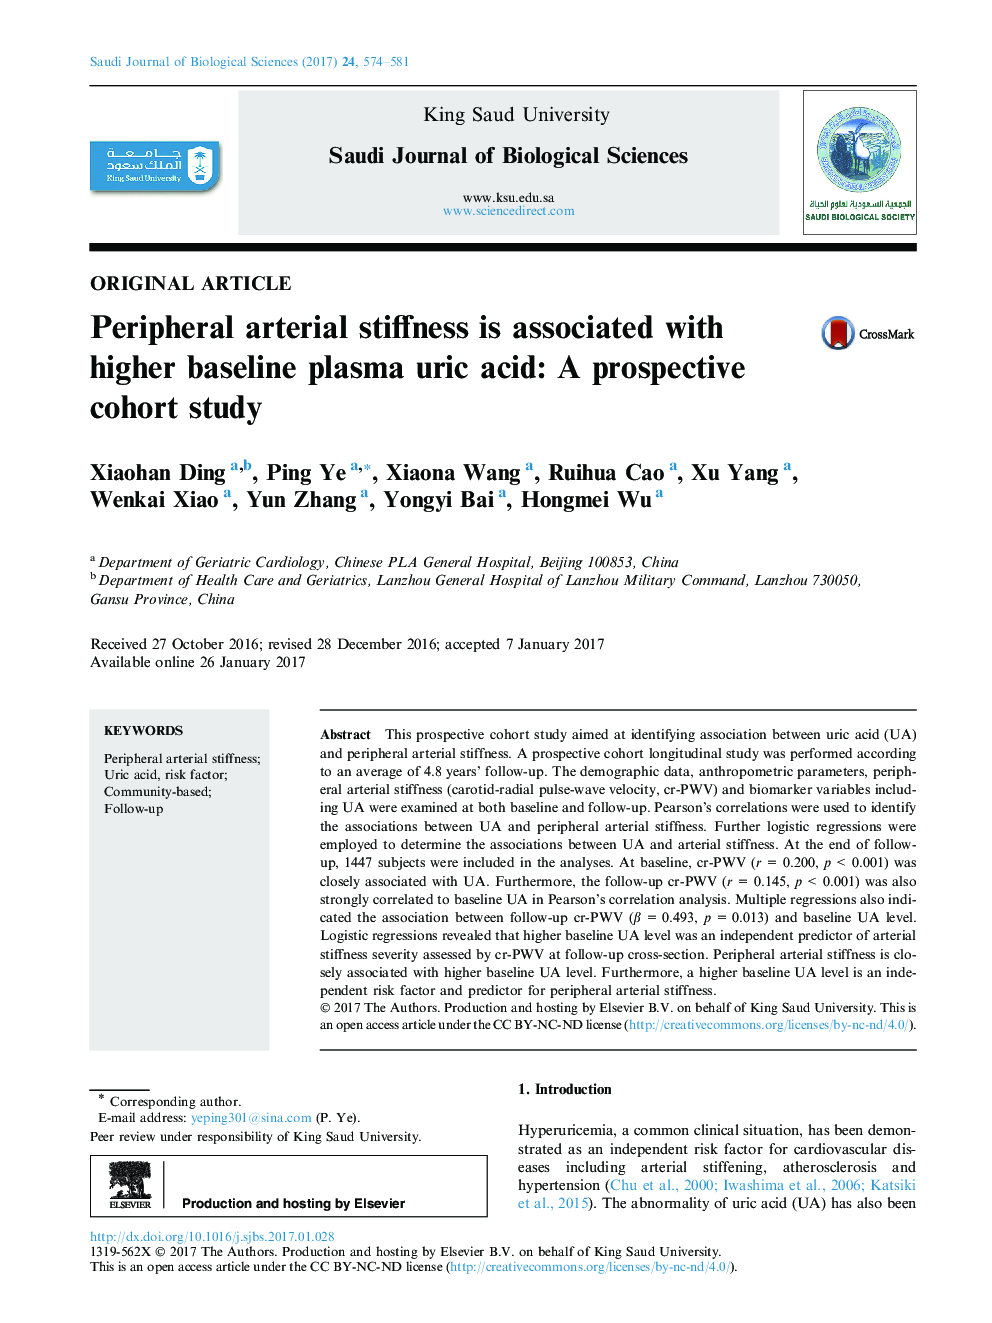 مقاله اصلی سفتی شریانی پیرامونی با اسید اوریک اسید پلاسمای بالاتری همراه است: یک مطالعه کوهورت چشمگیر 